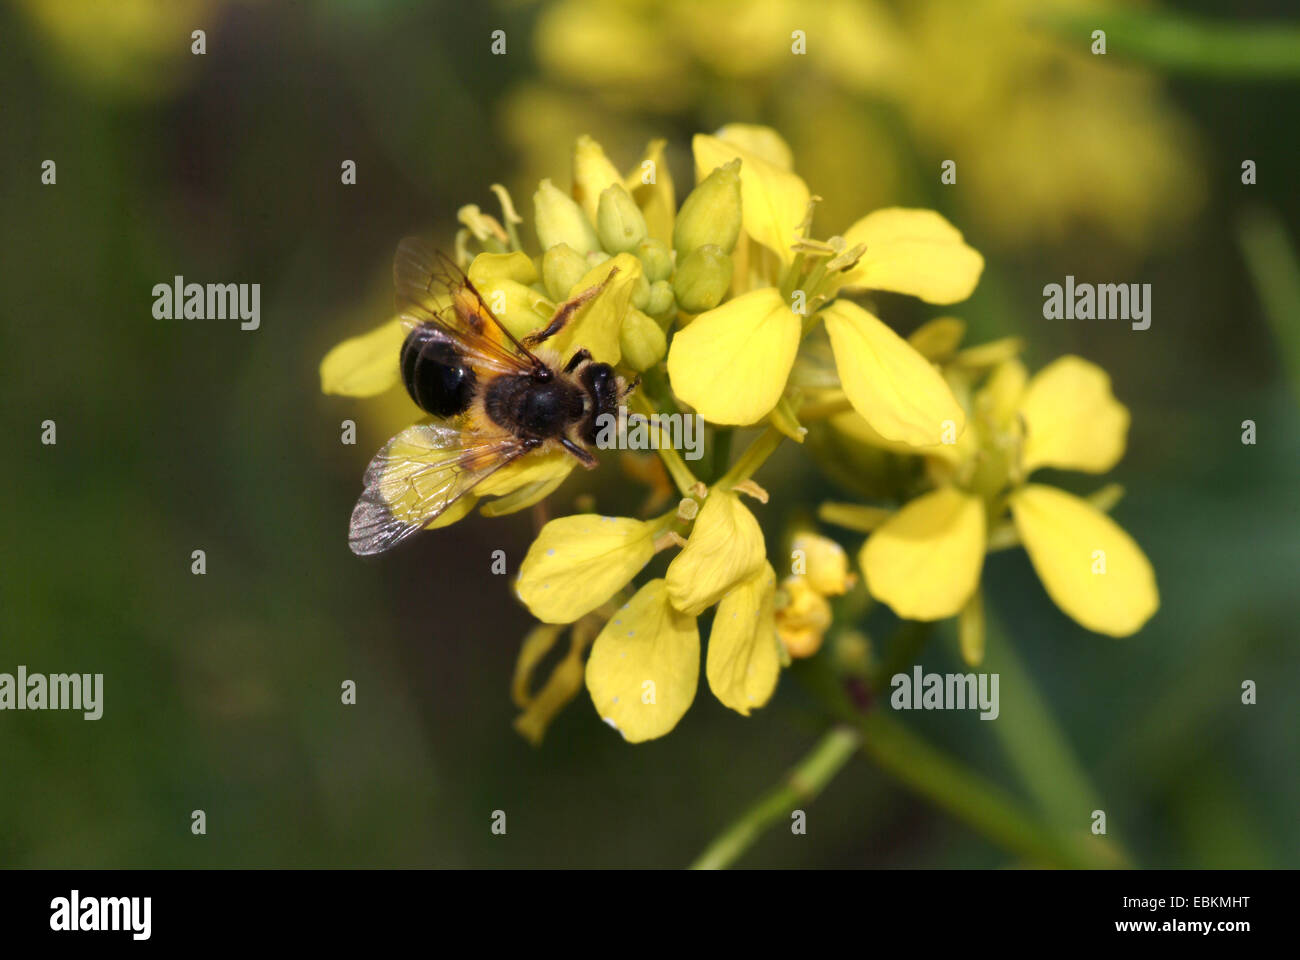 Ackersenf, Bereich Senf, Mais-Senf (Sinapis Arvensis), Blütenstand mit Insekt, Deutschland Stockfoto